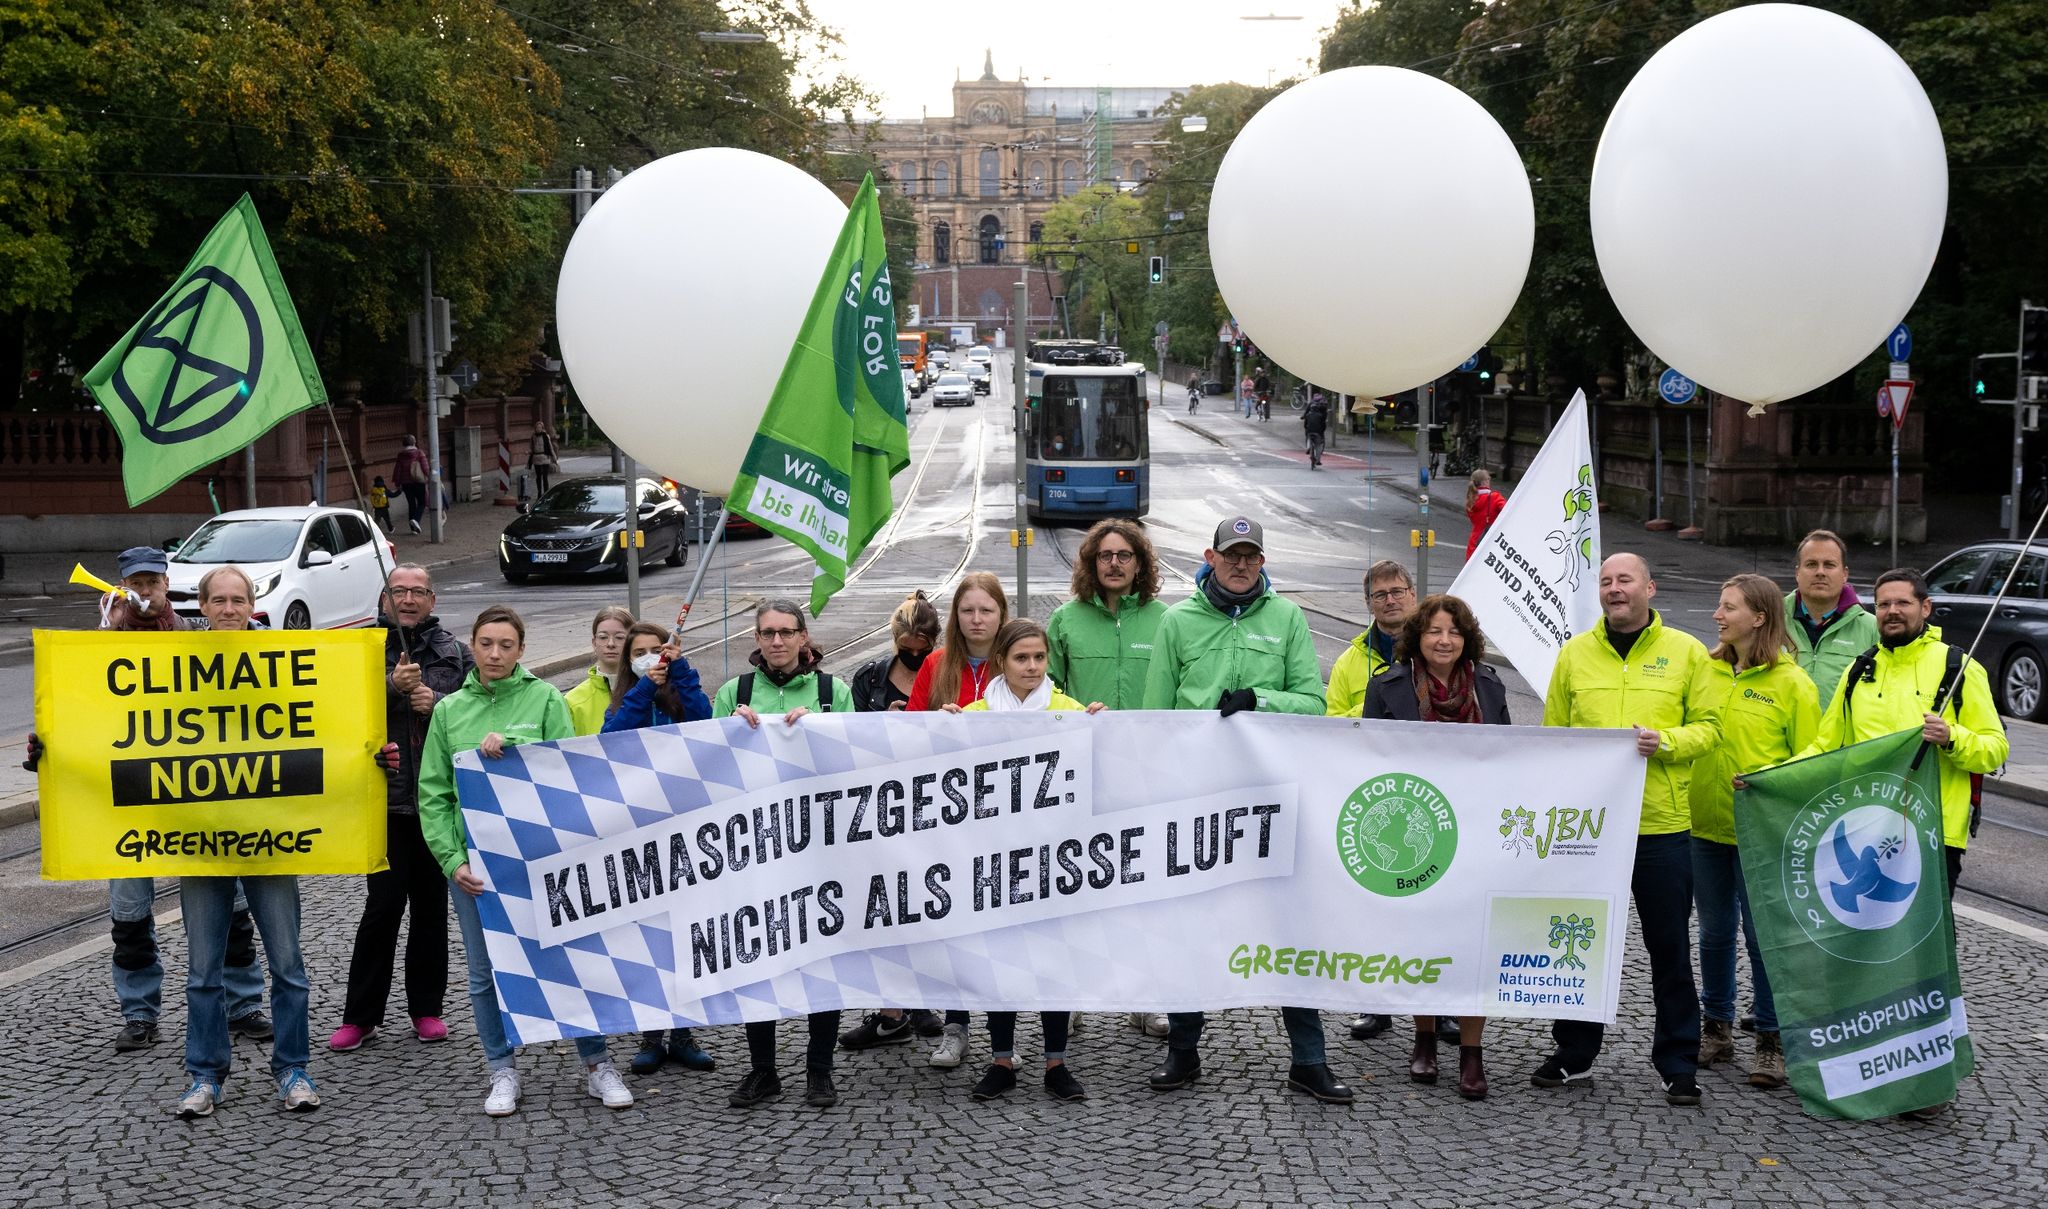 Mitglieder von BUND, Greenpeace und Fridays for Future demonstrieren in der Nähe des Landtages für besseren Klimaschutz.